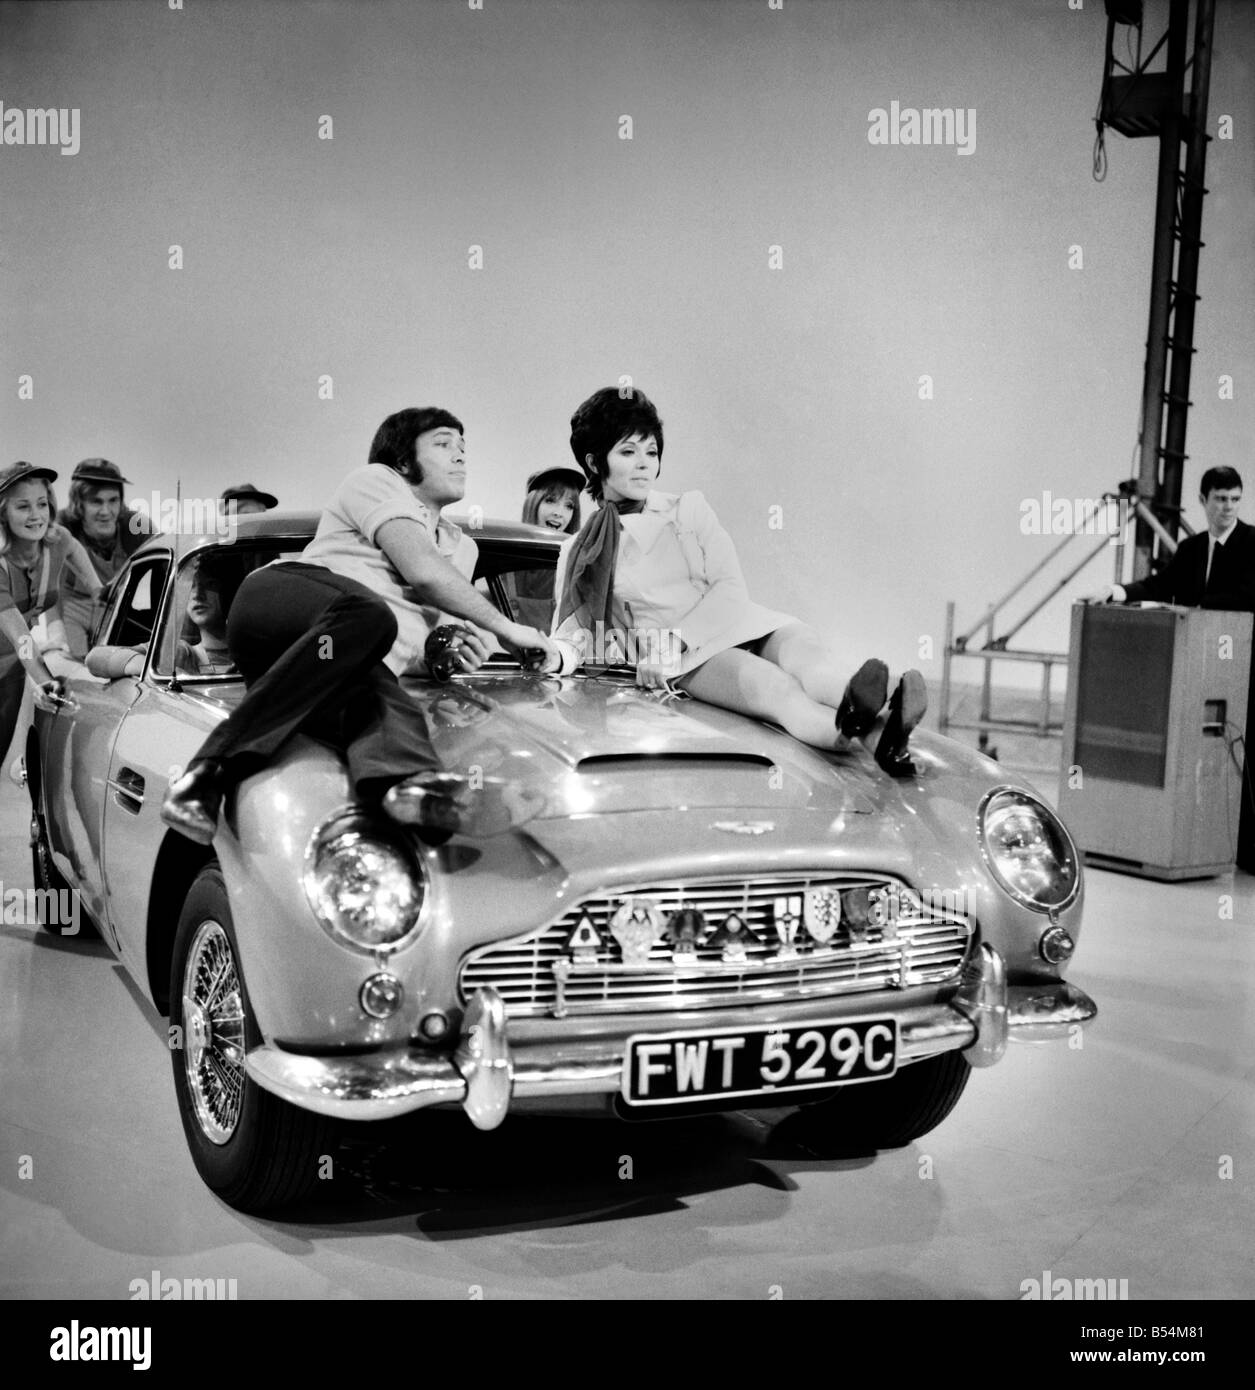 Sängerin Susan Maughan am Set von The Samstag Crowd im Weekhand Studio London, Wembley aufgenommen. Susan in einem Shateh mit Peter Goggino auf der Motorhaube eines Sportwagens von Aston MArtin. November 1969 Z11306-005 Stockfoto